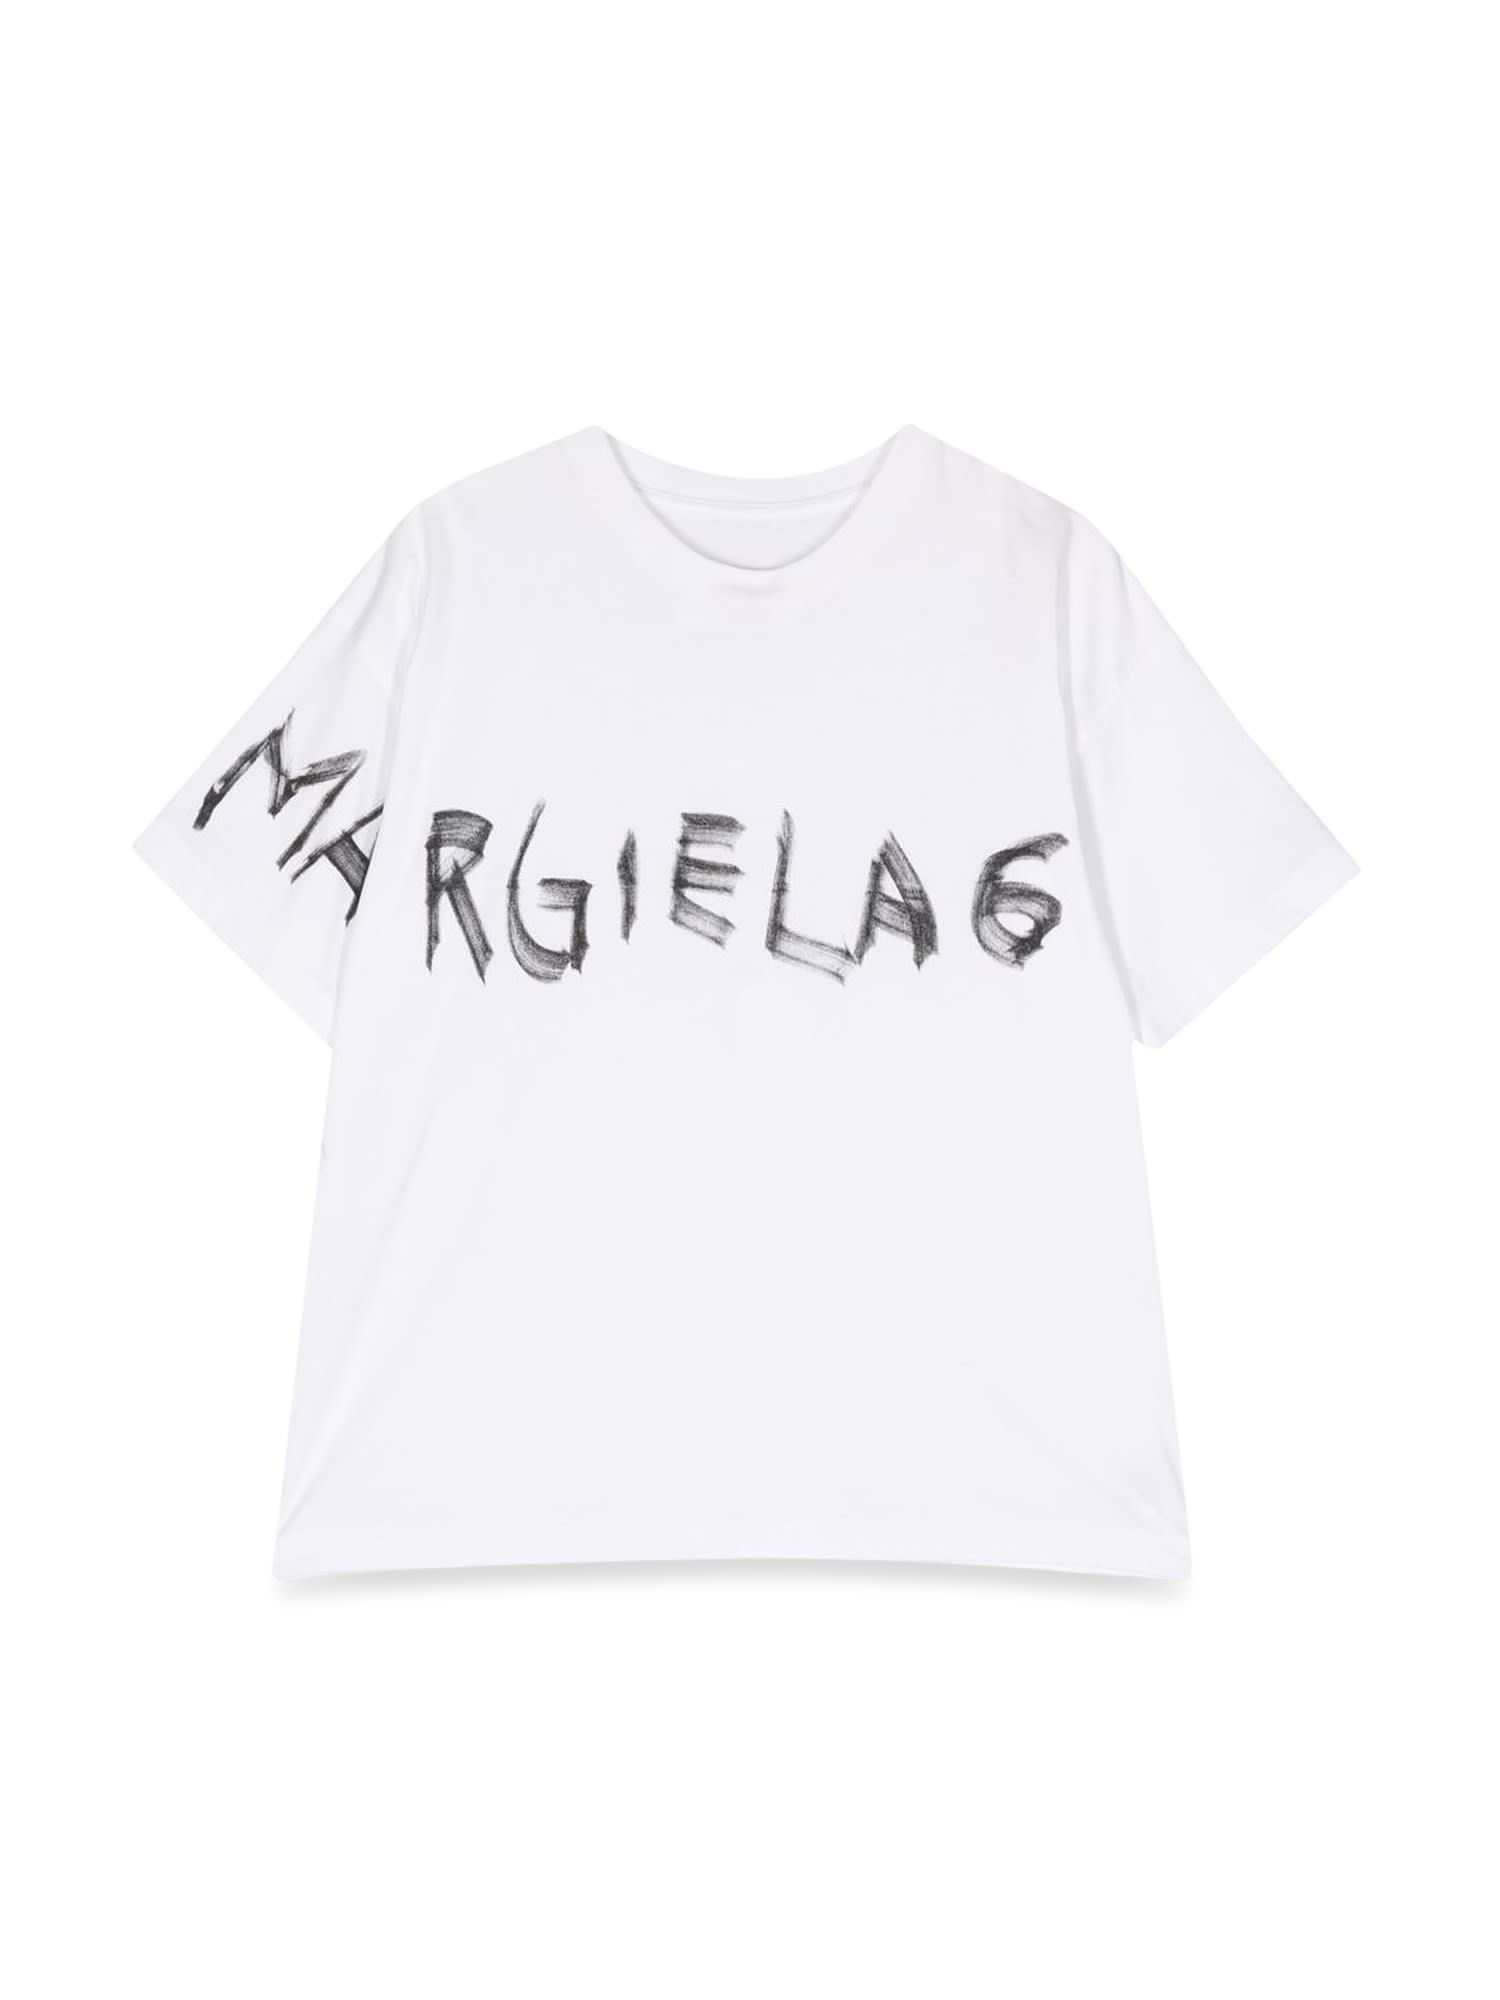 MM6 MAISON MARGIELA ロゴ Tシャツ | labiela.com